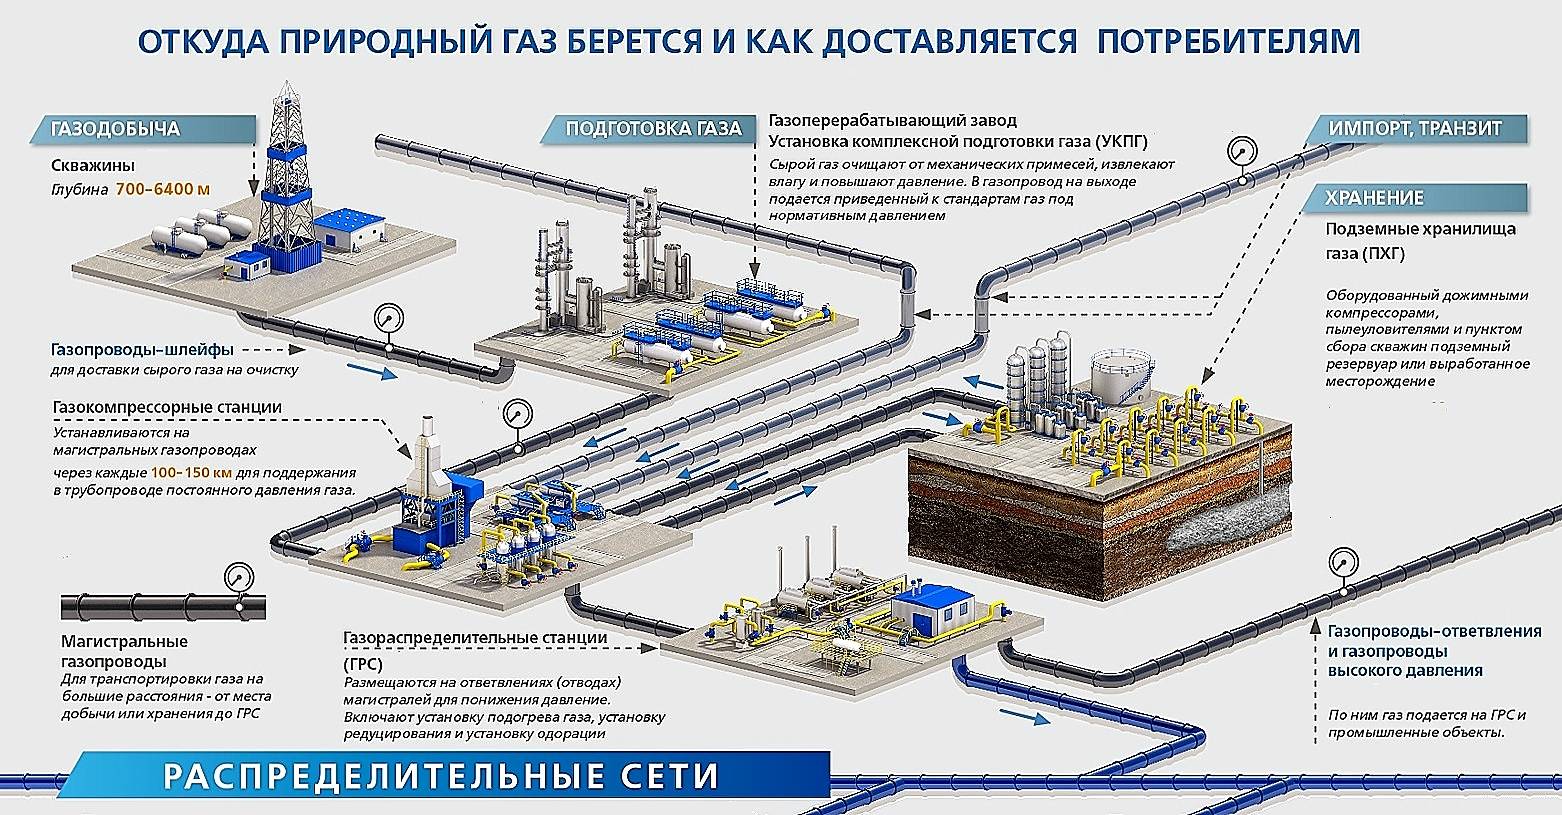 ✅ природный газ – это пропан или метан. что дешевле и лучше — газгольдер или магистральный газ? сравнительный обзор - dnp-zem.ru